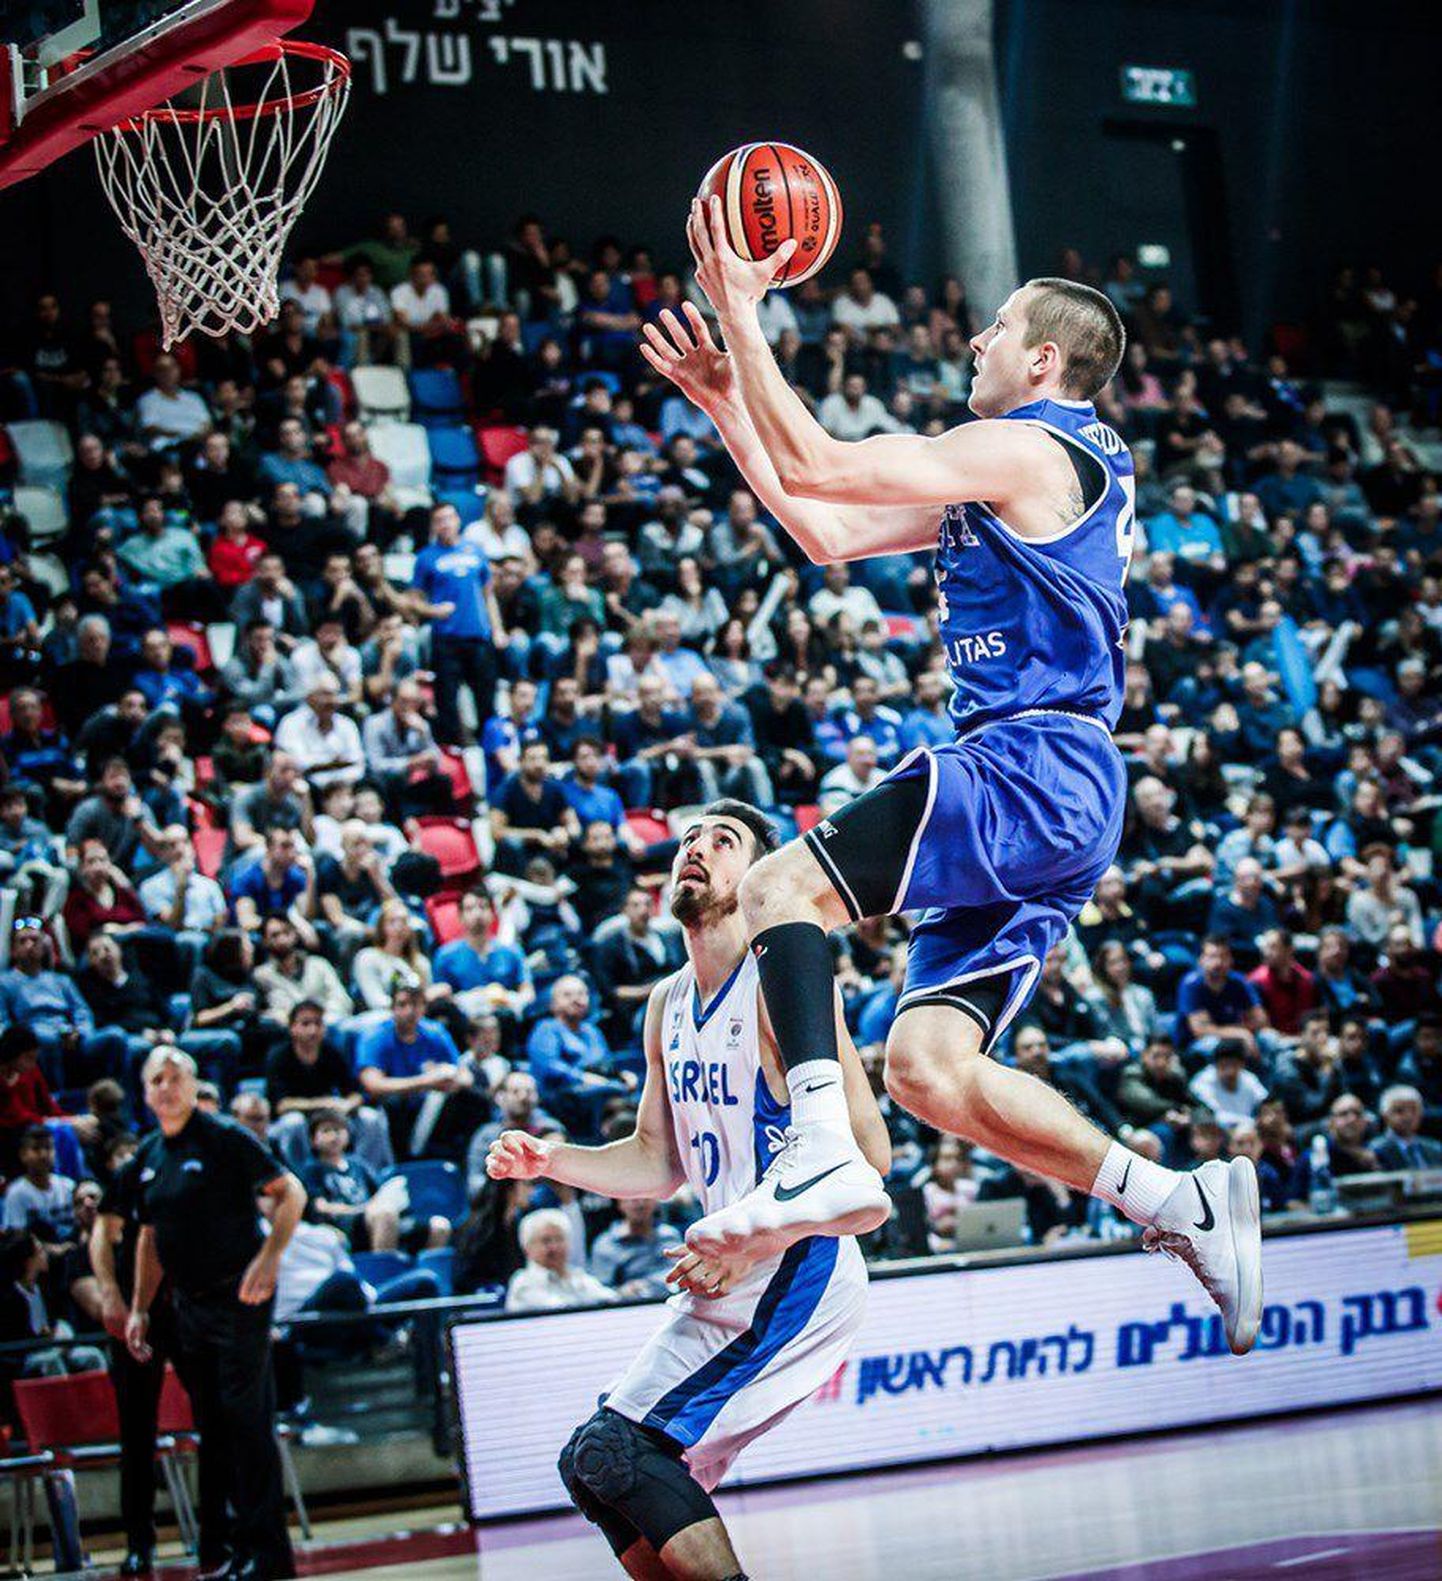 Kas Eesti korvpallikoondis saab 2021. aasta EM-mänge pidada Saku suurhallis? Pildil Rain Veideman MM-valikmängus Iisraeliga. FOTO: Fiba